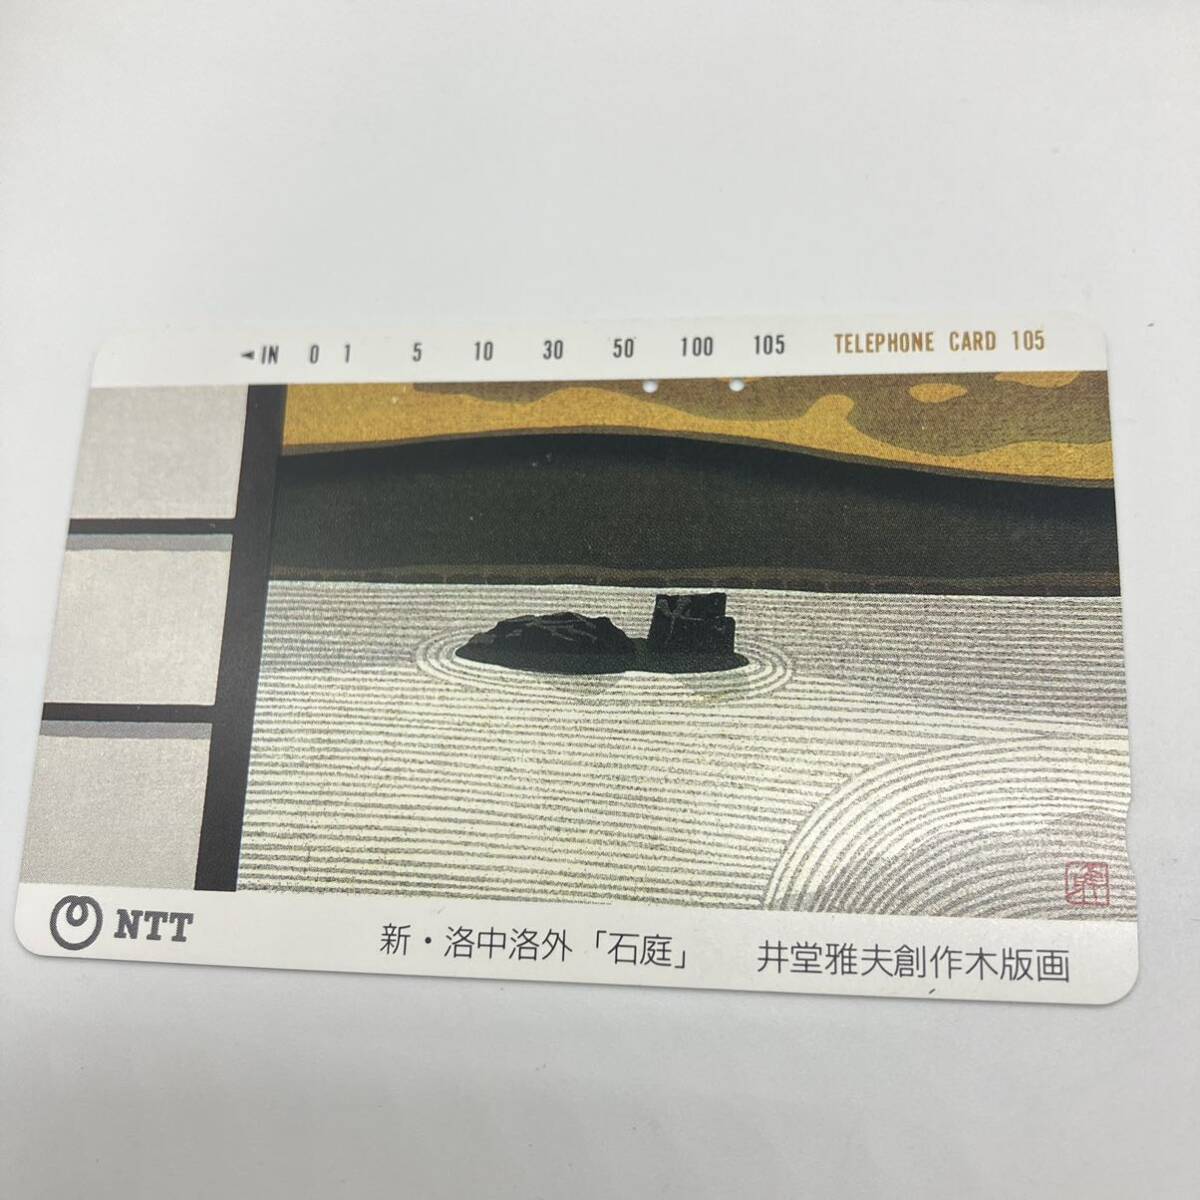 1 иен ~ 4* [ не использовался ] телефонная карточка 50 частотность ×44 листов 105 частотность 1 листов ( дыра ) всего 45 листов совместно телефонная карточка память карта retro коллекция NTT